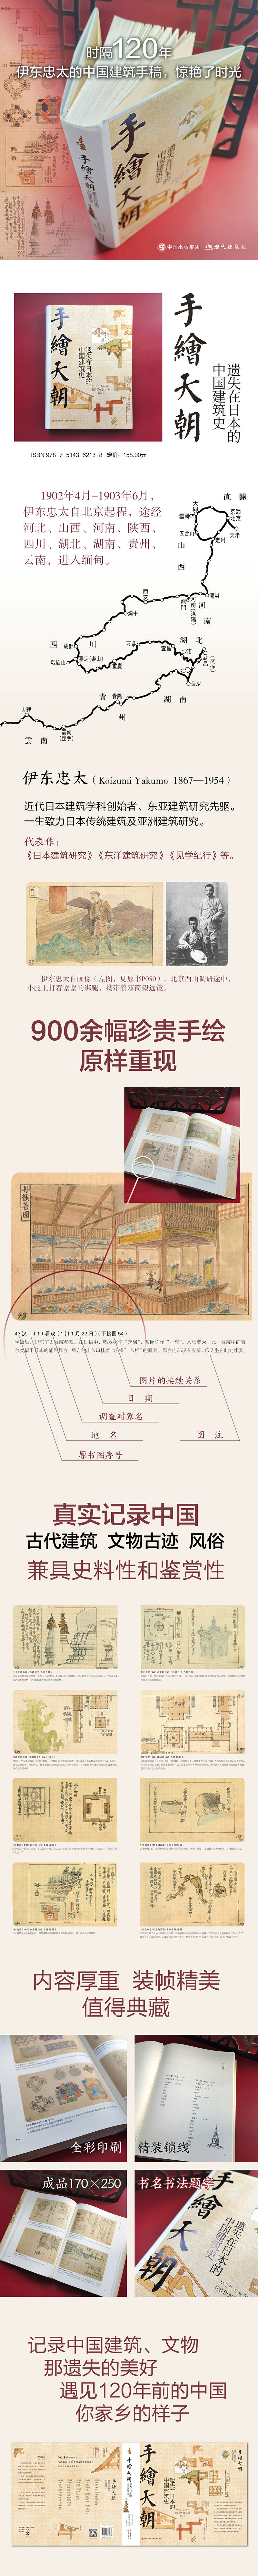 手绘天朝:遗失在日本的中国建筑史 [日] 伊东忠太 著，陈琰 译 现代出版社